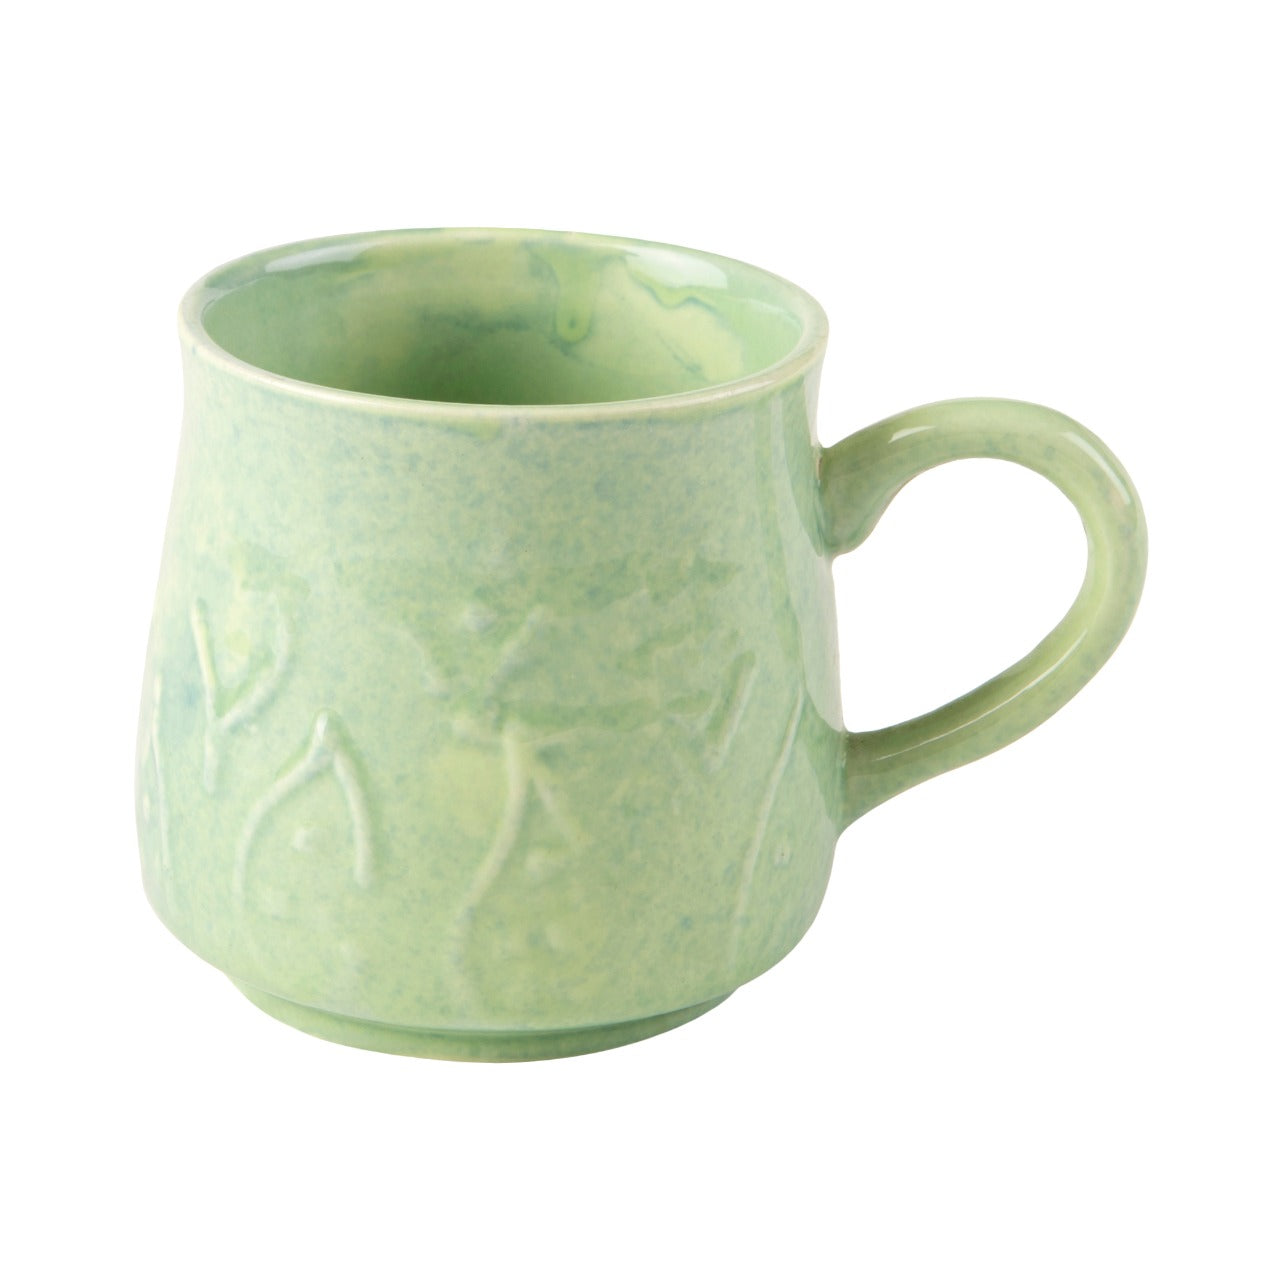 Teal Tea Mug